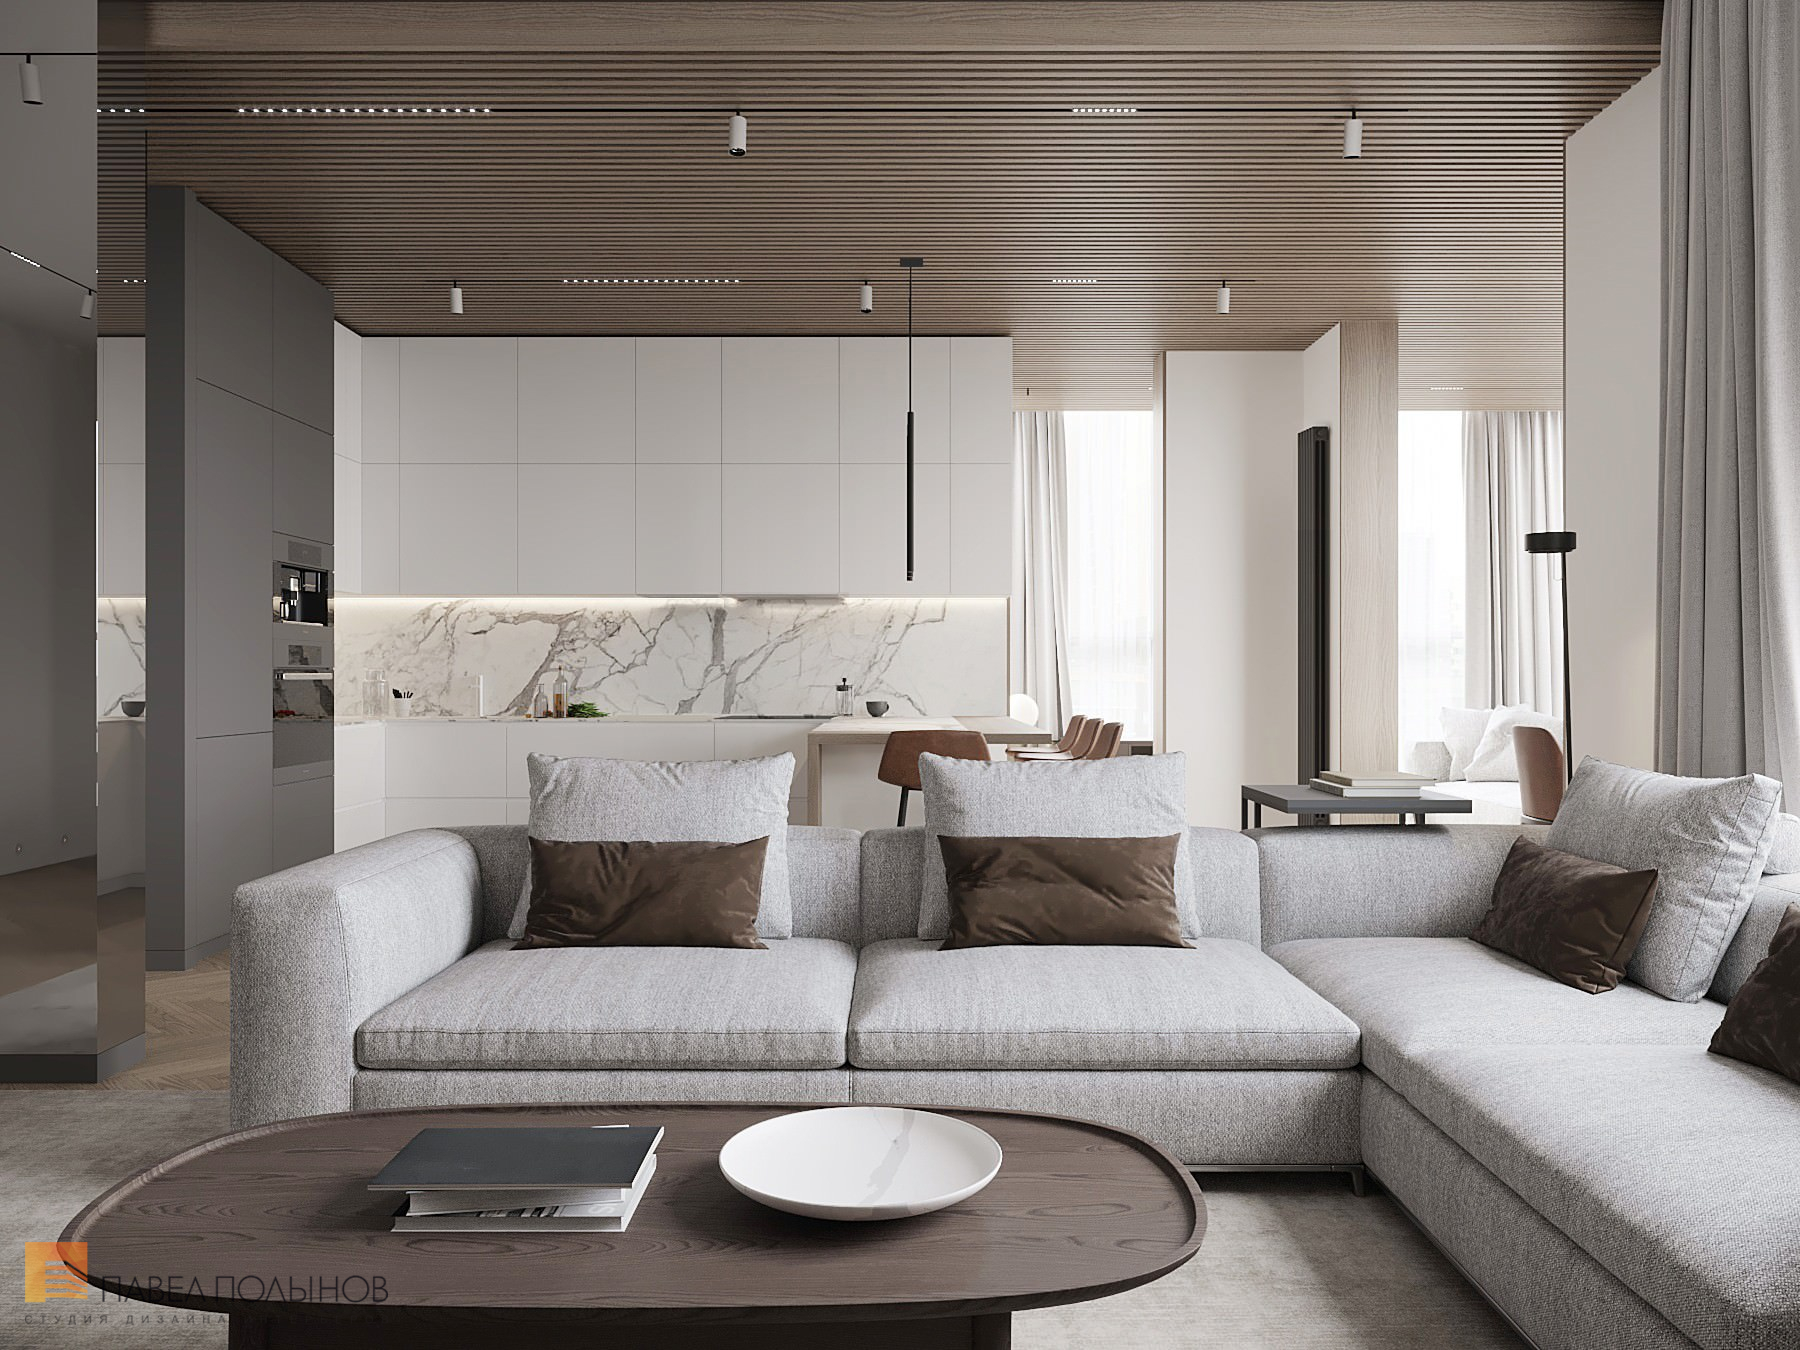 Фото дизайн кухни-гостиной из проекта «Просторная квартира в современном стиле, ЖК «Duderhof Club», 146 кв.м.»